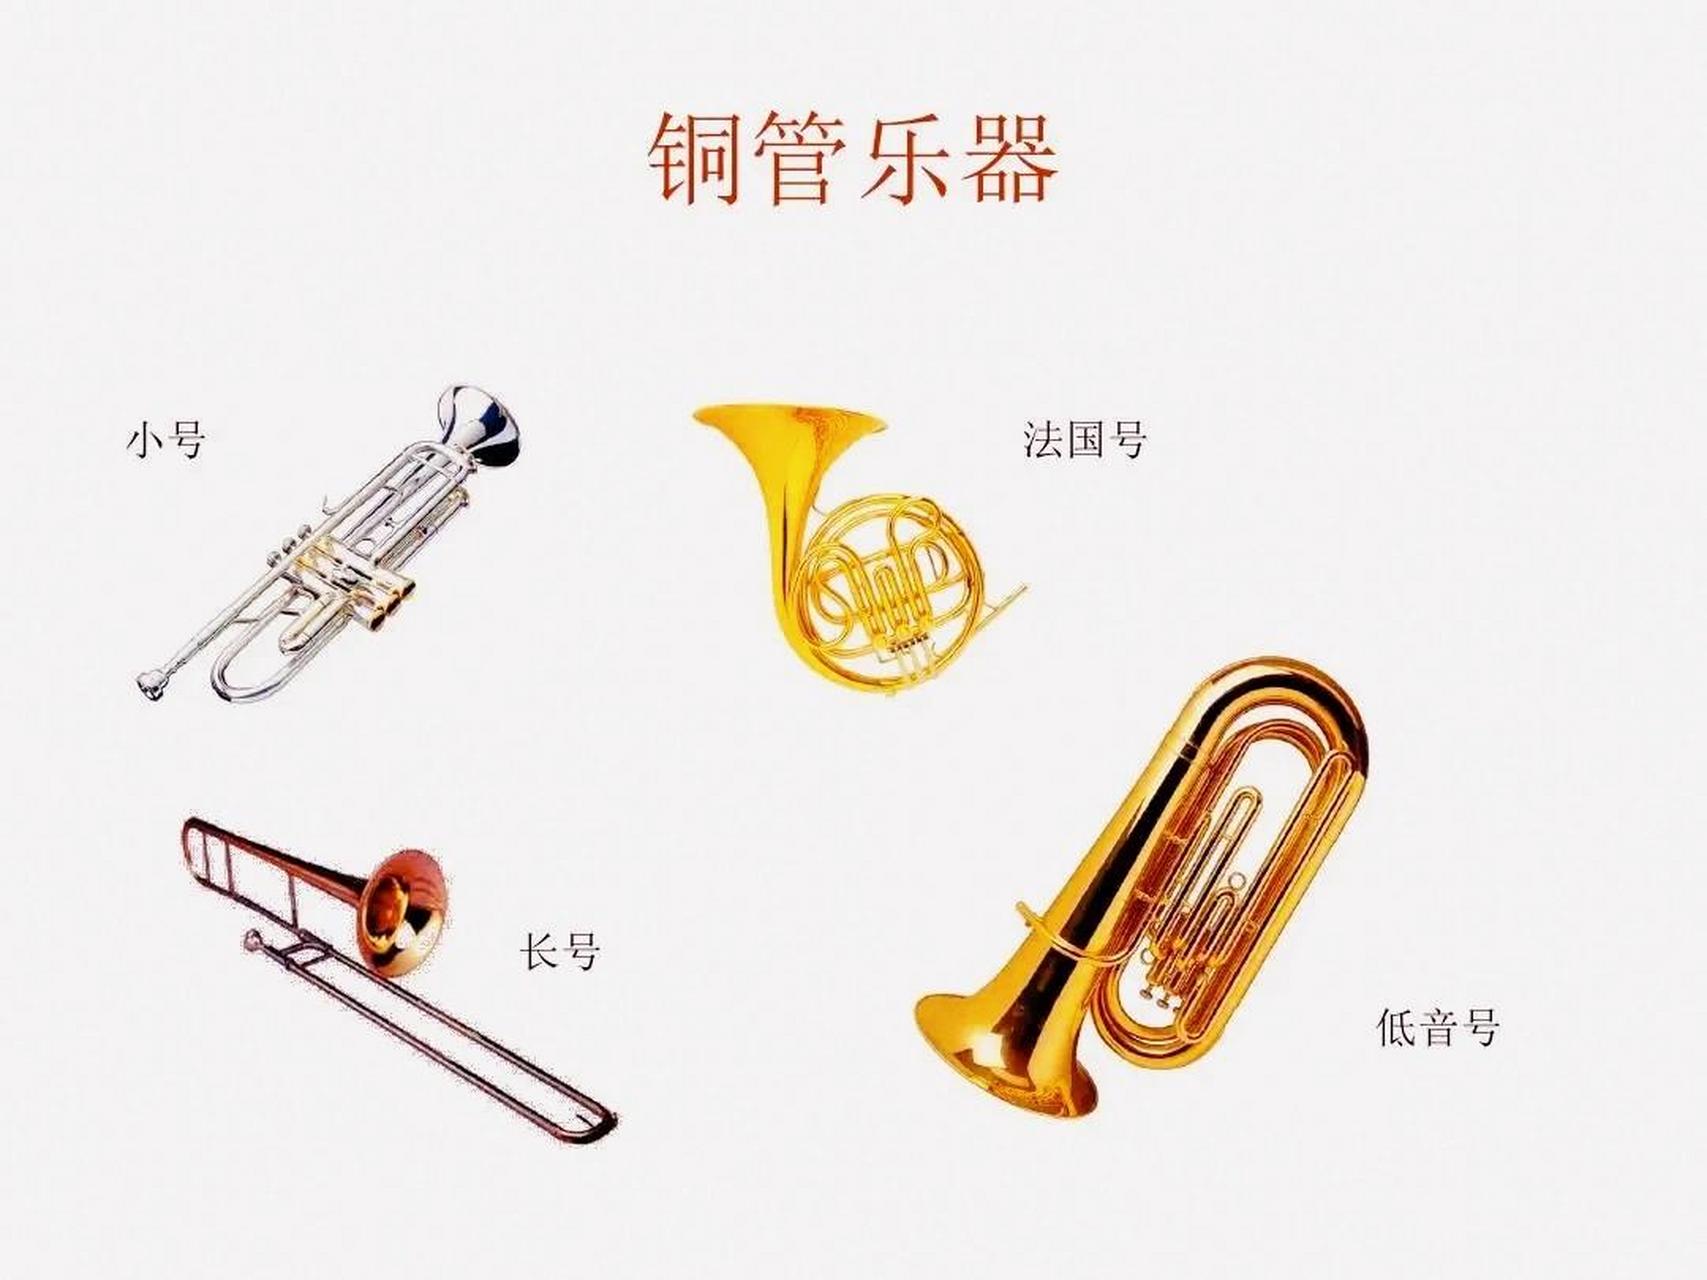 西洋乐器名称简介:铜管乐器 铜管乐器(the brass family) 以金属製成